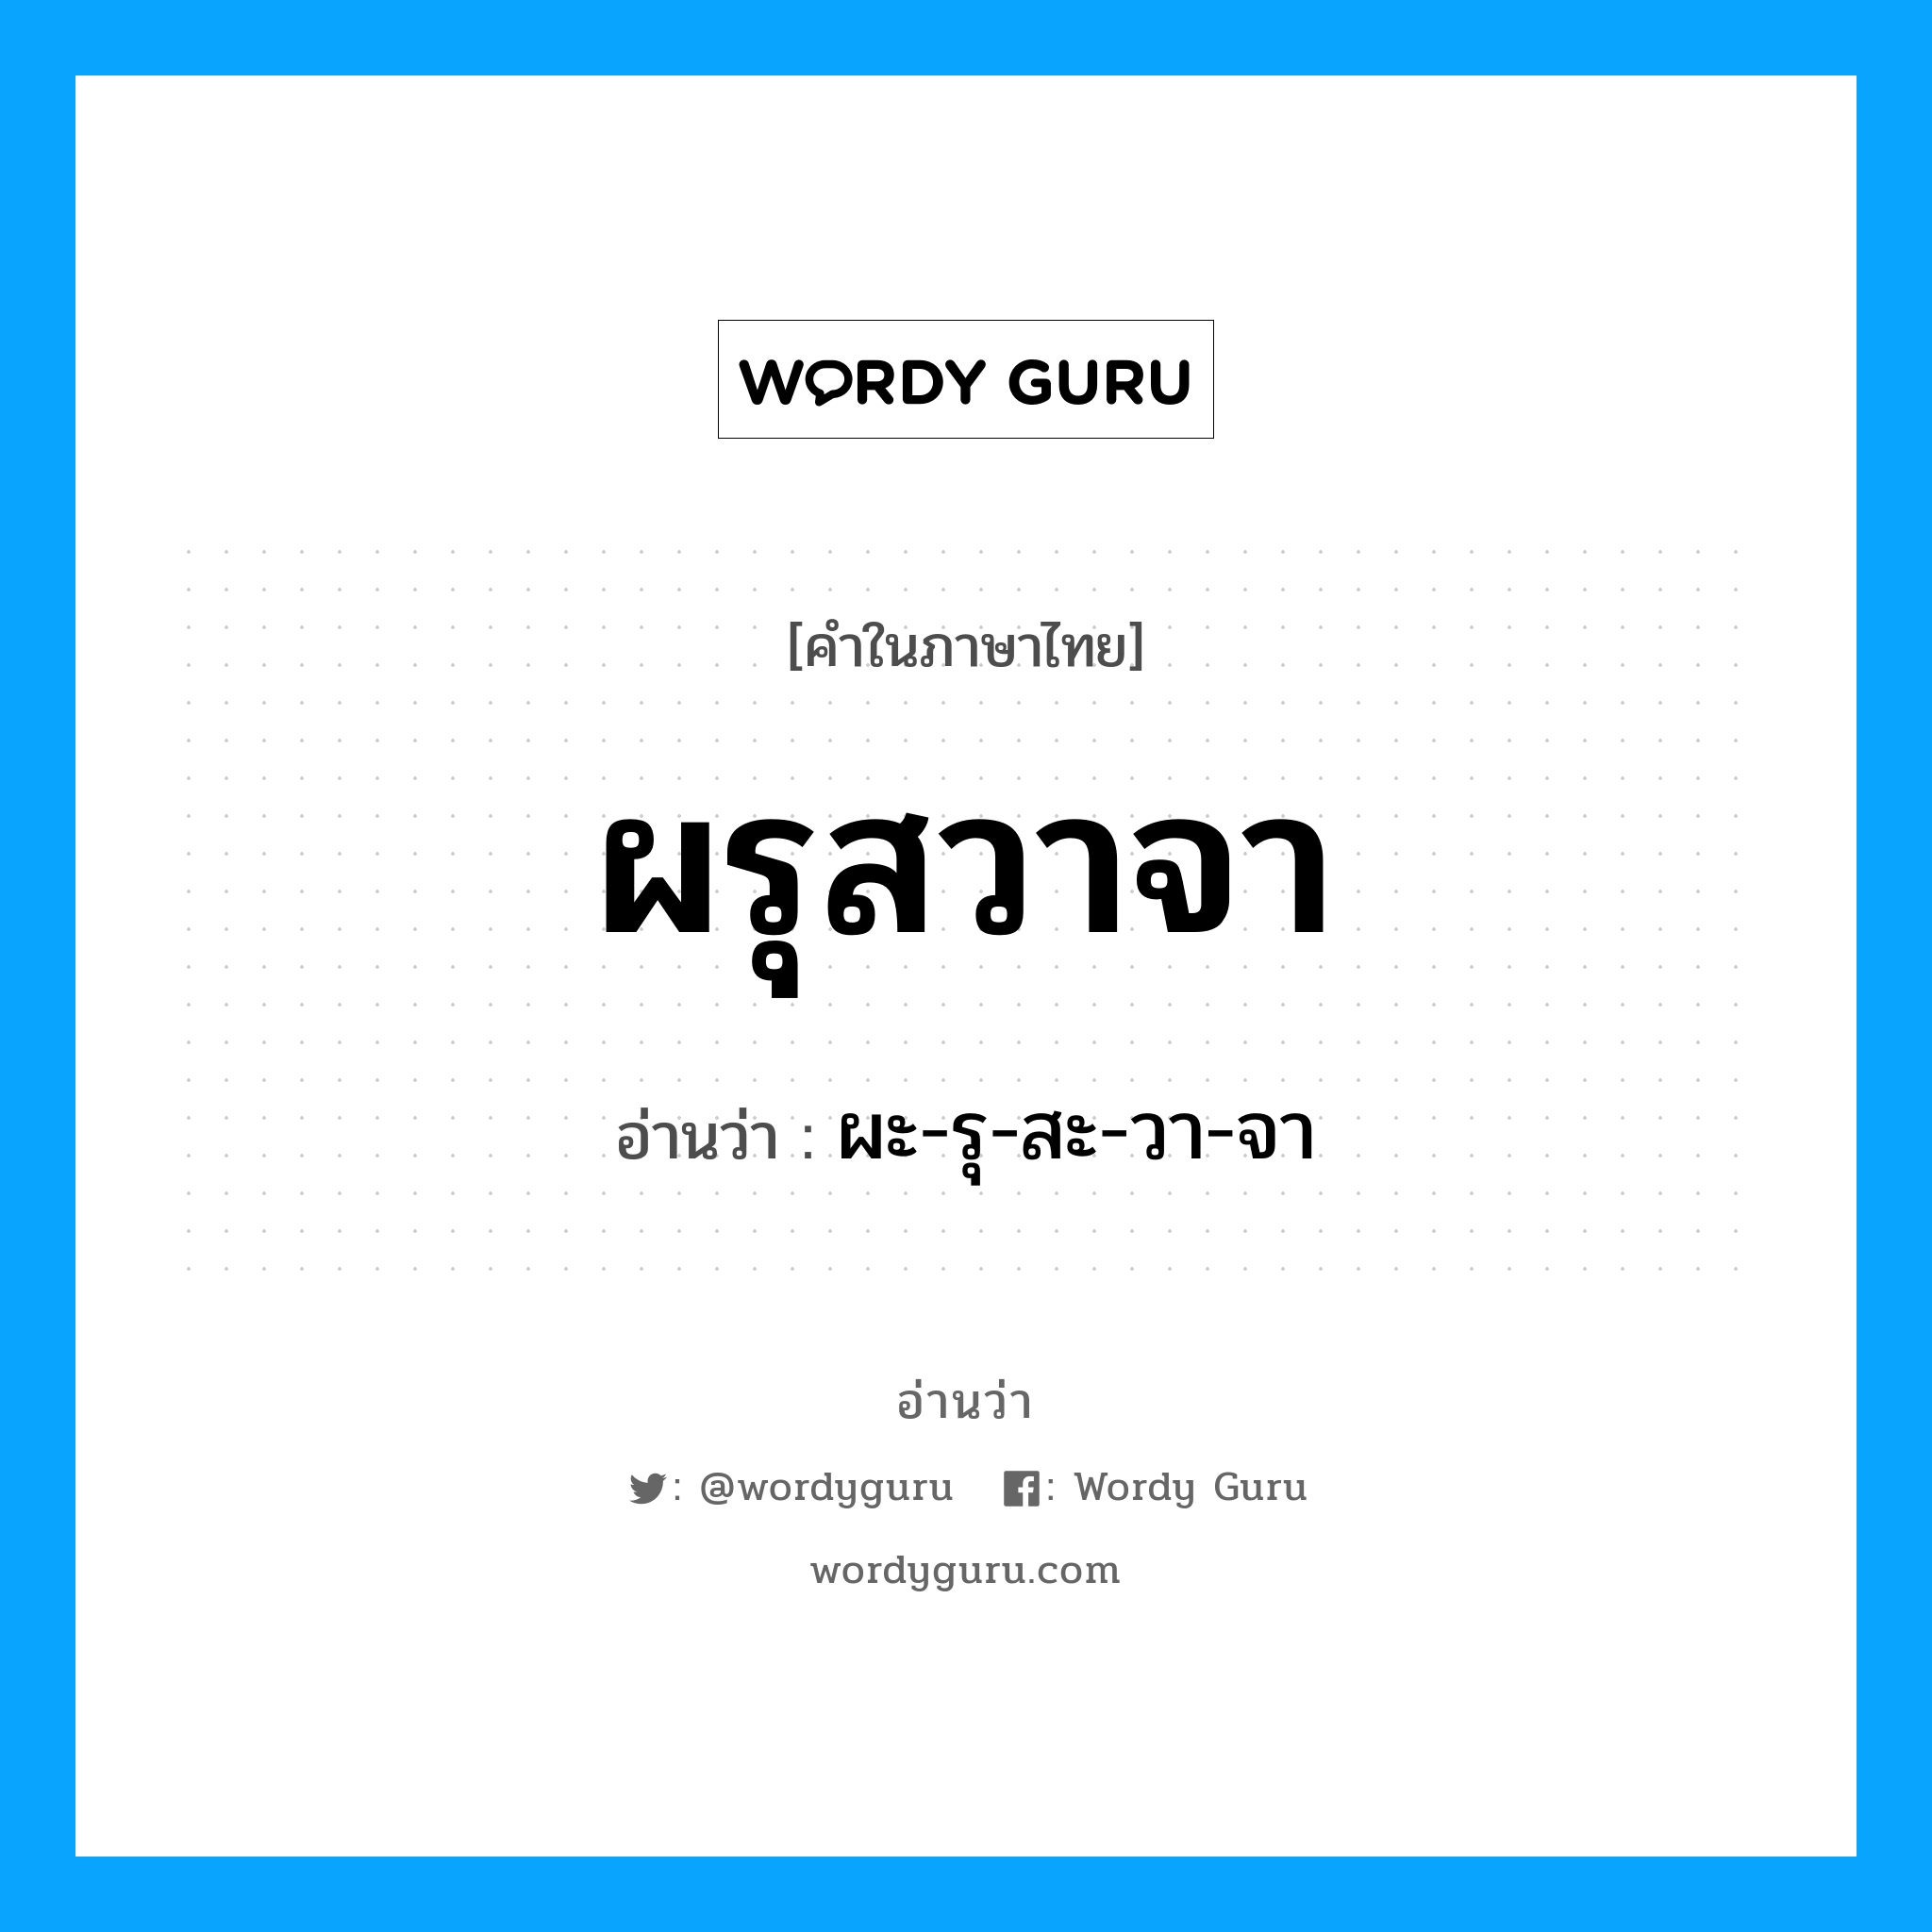 ผะ-รุ-สะ-วา-จา เป็นคำอ่านของคำไหน?, คำในภาษาไทย ผะ-รุ-สะ-วา-จา อ่านว่า ผรุสวาจา